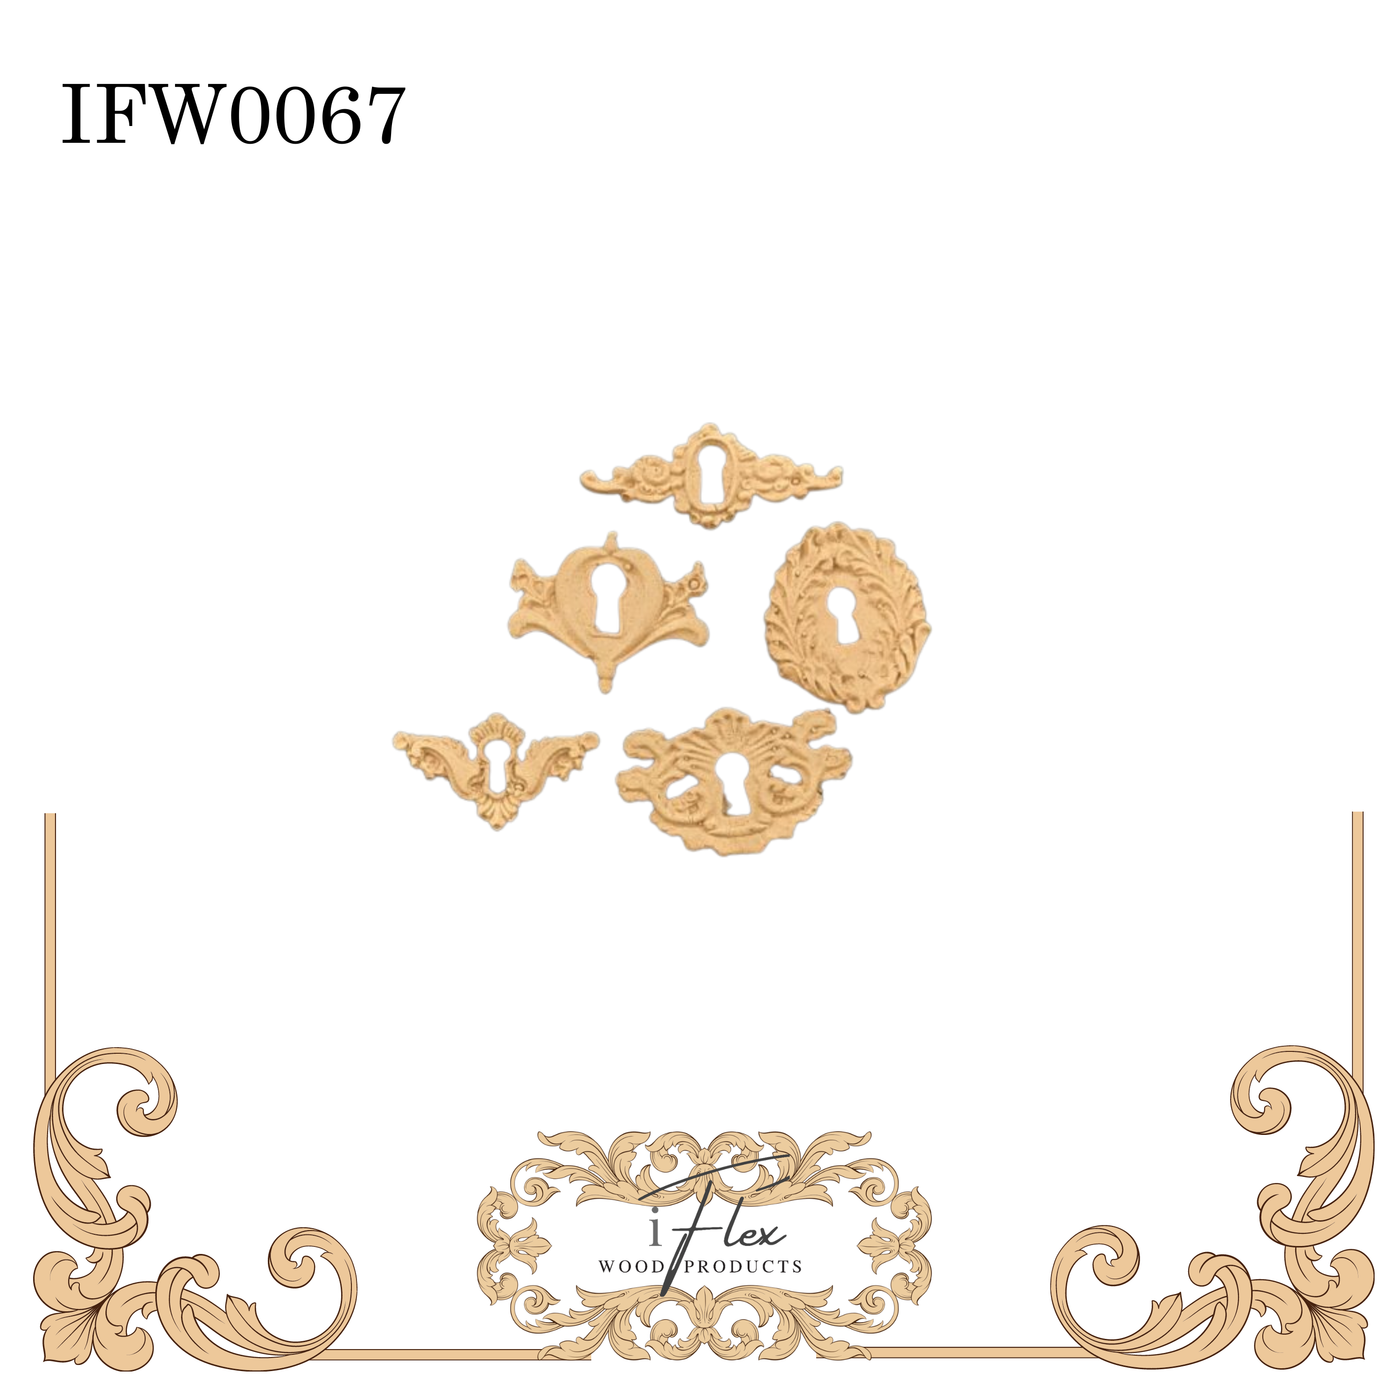 IFW 0067